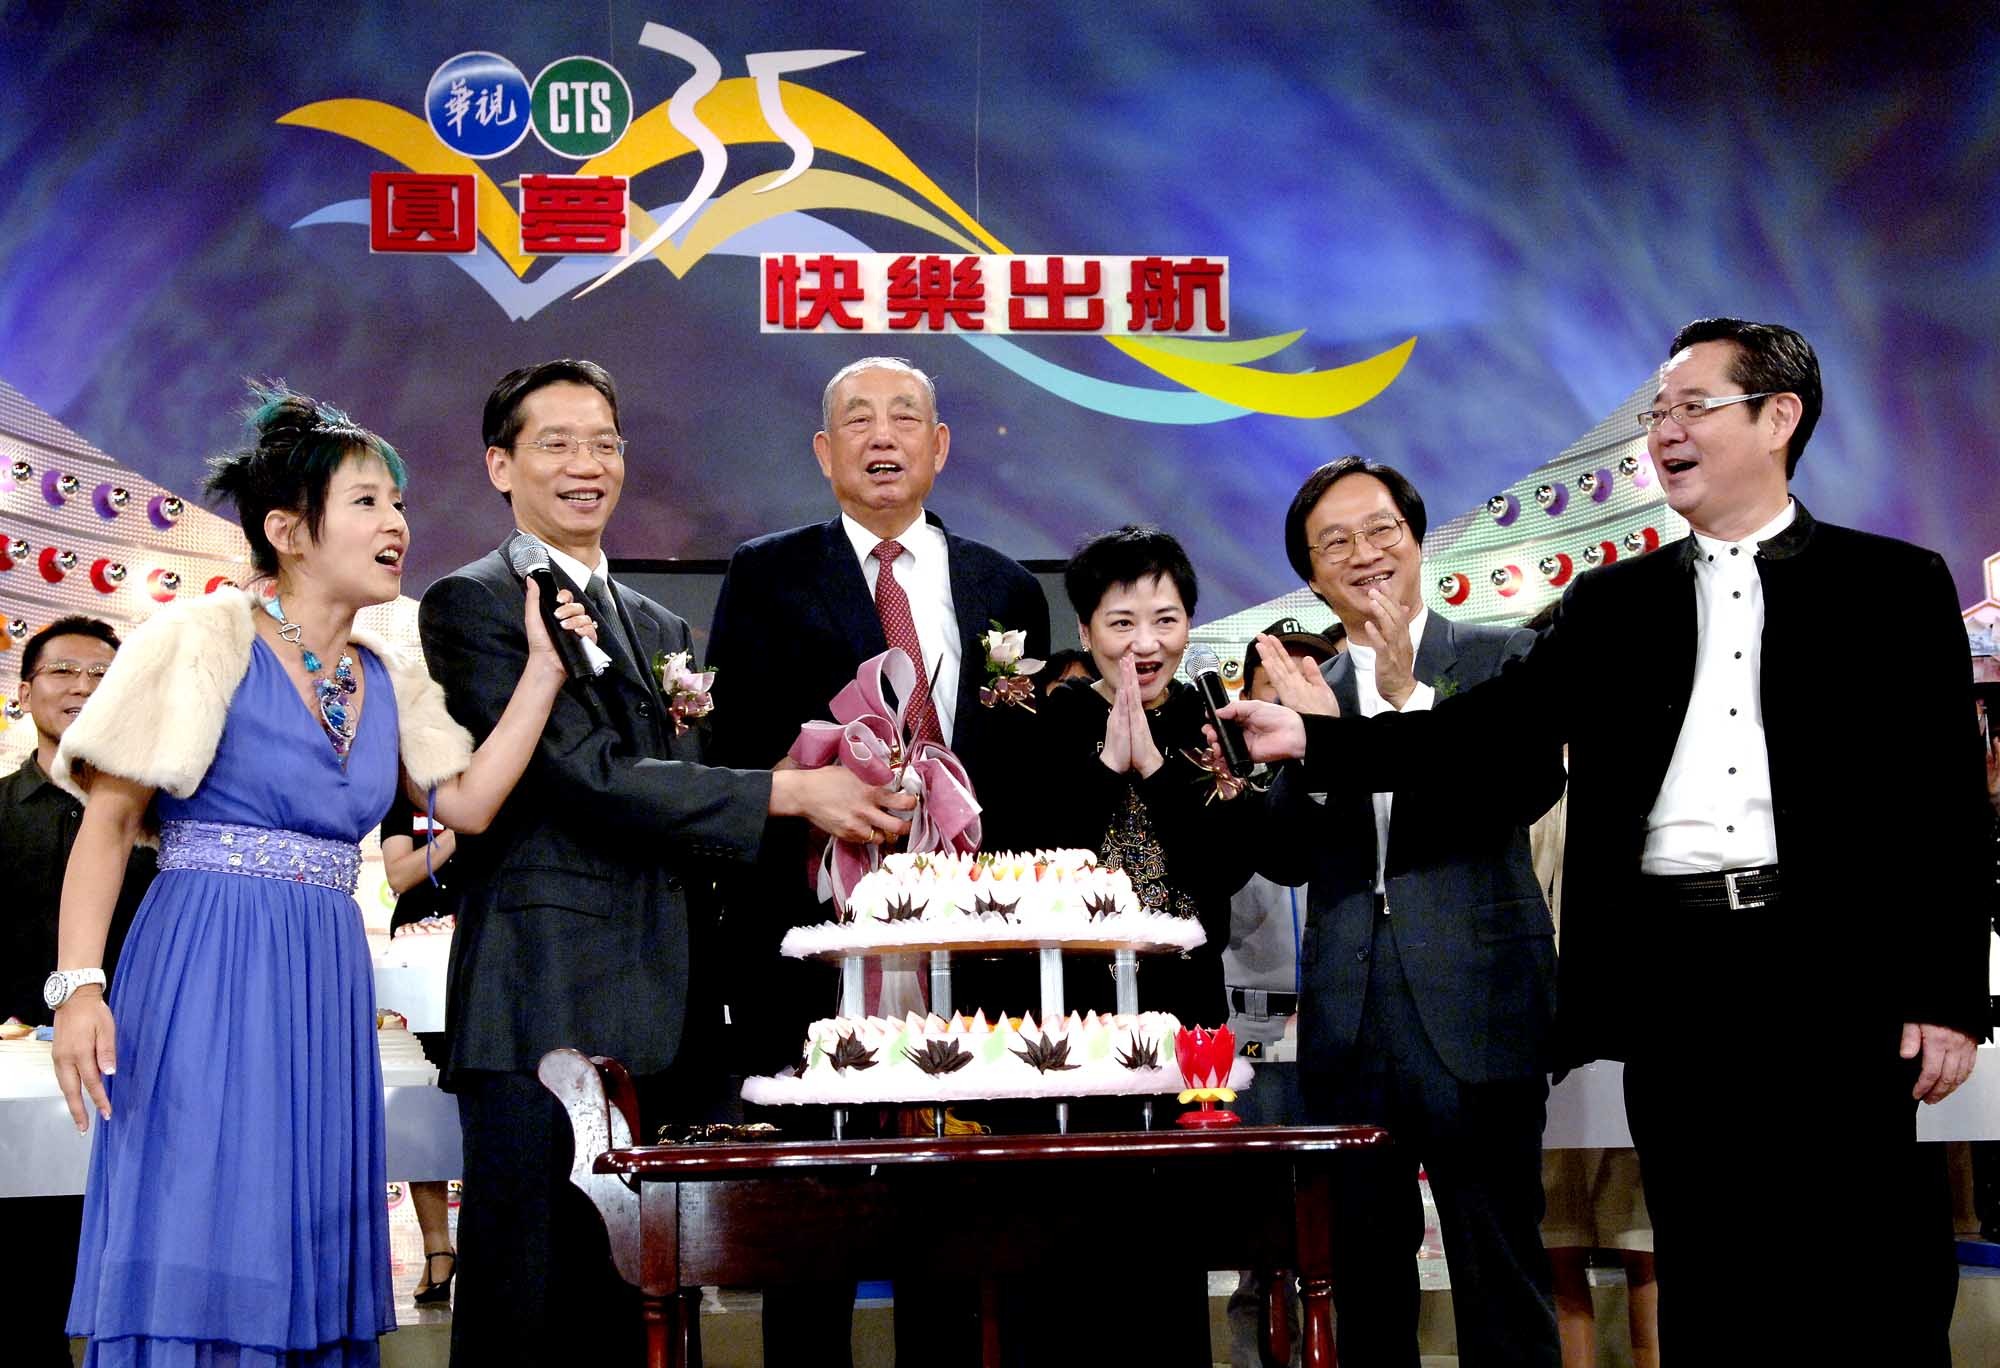 華視35週年台慶  「華視人」歡喜熱鬧回娘家 | 華視新聞